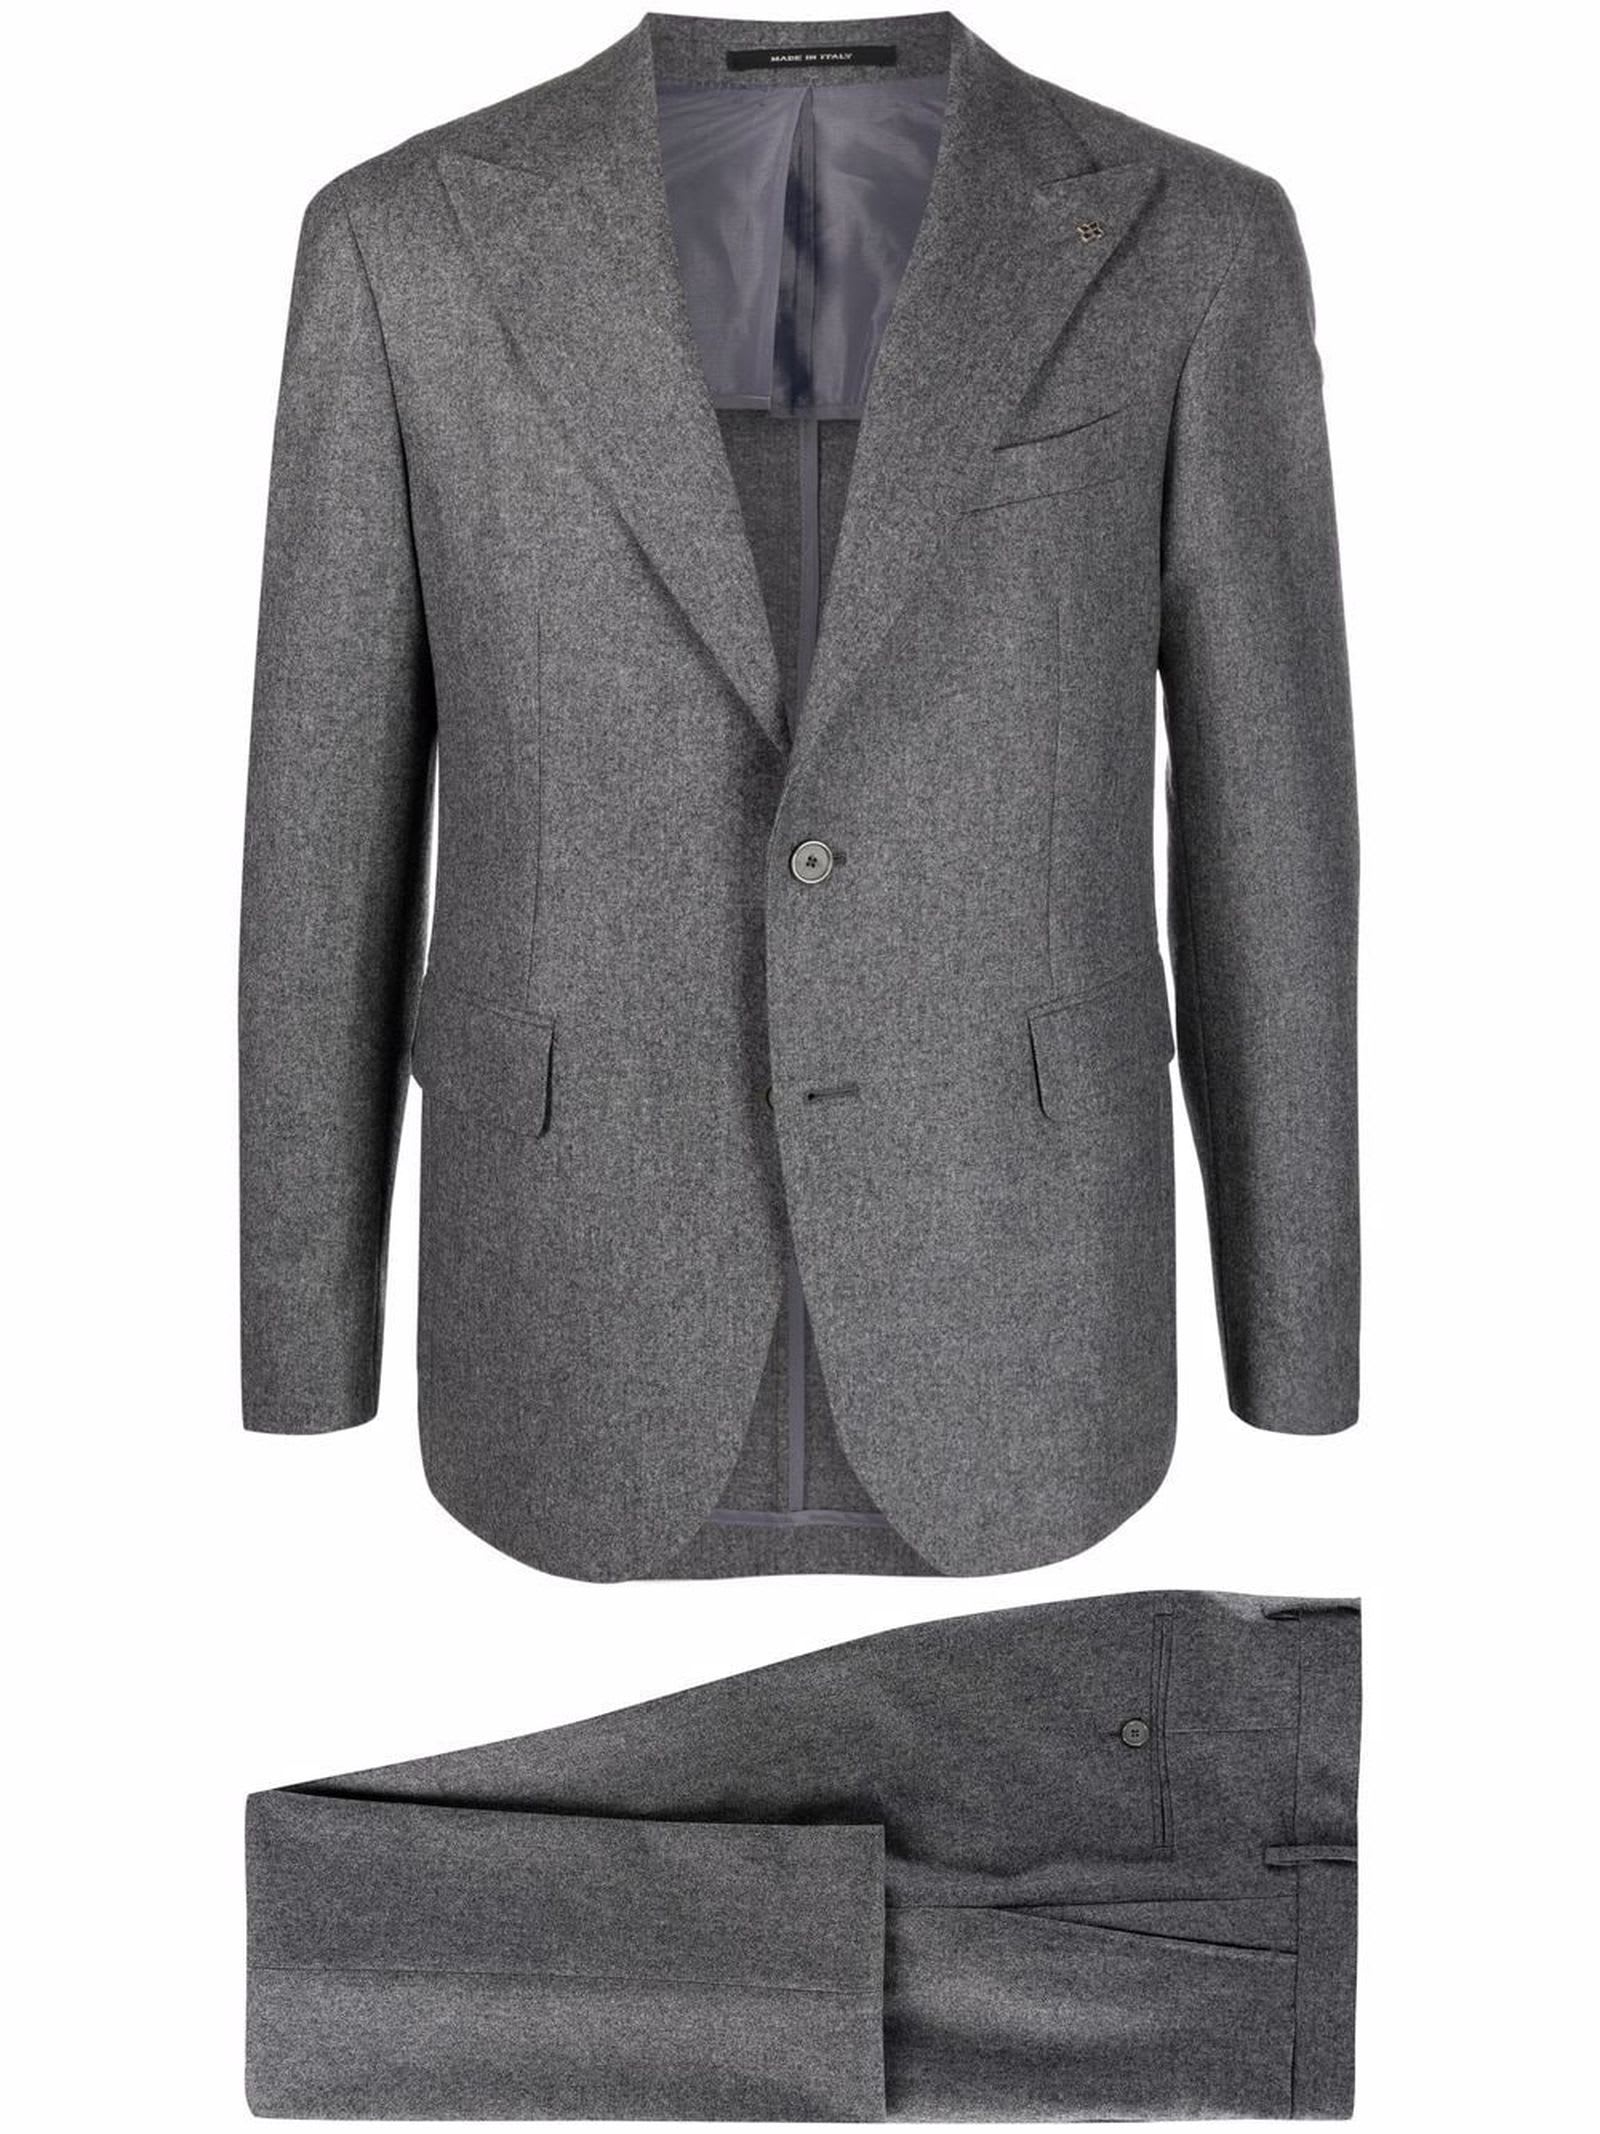 Tagliatore Grey Virgin Wool Suit